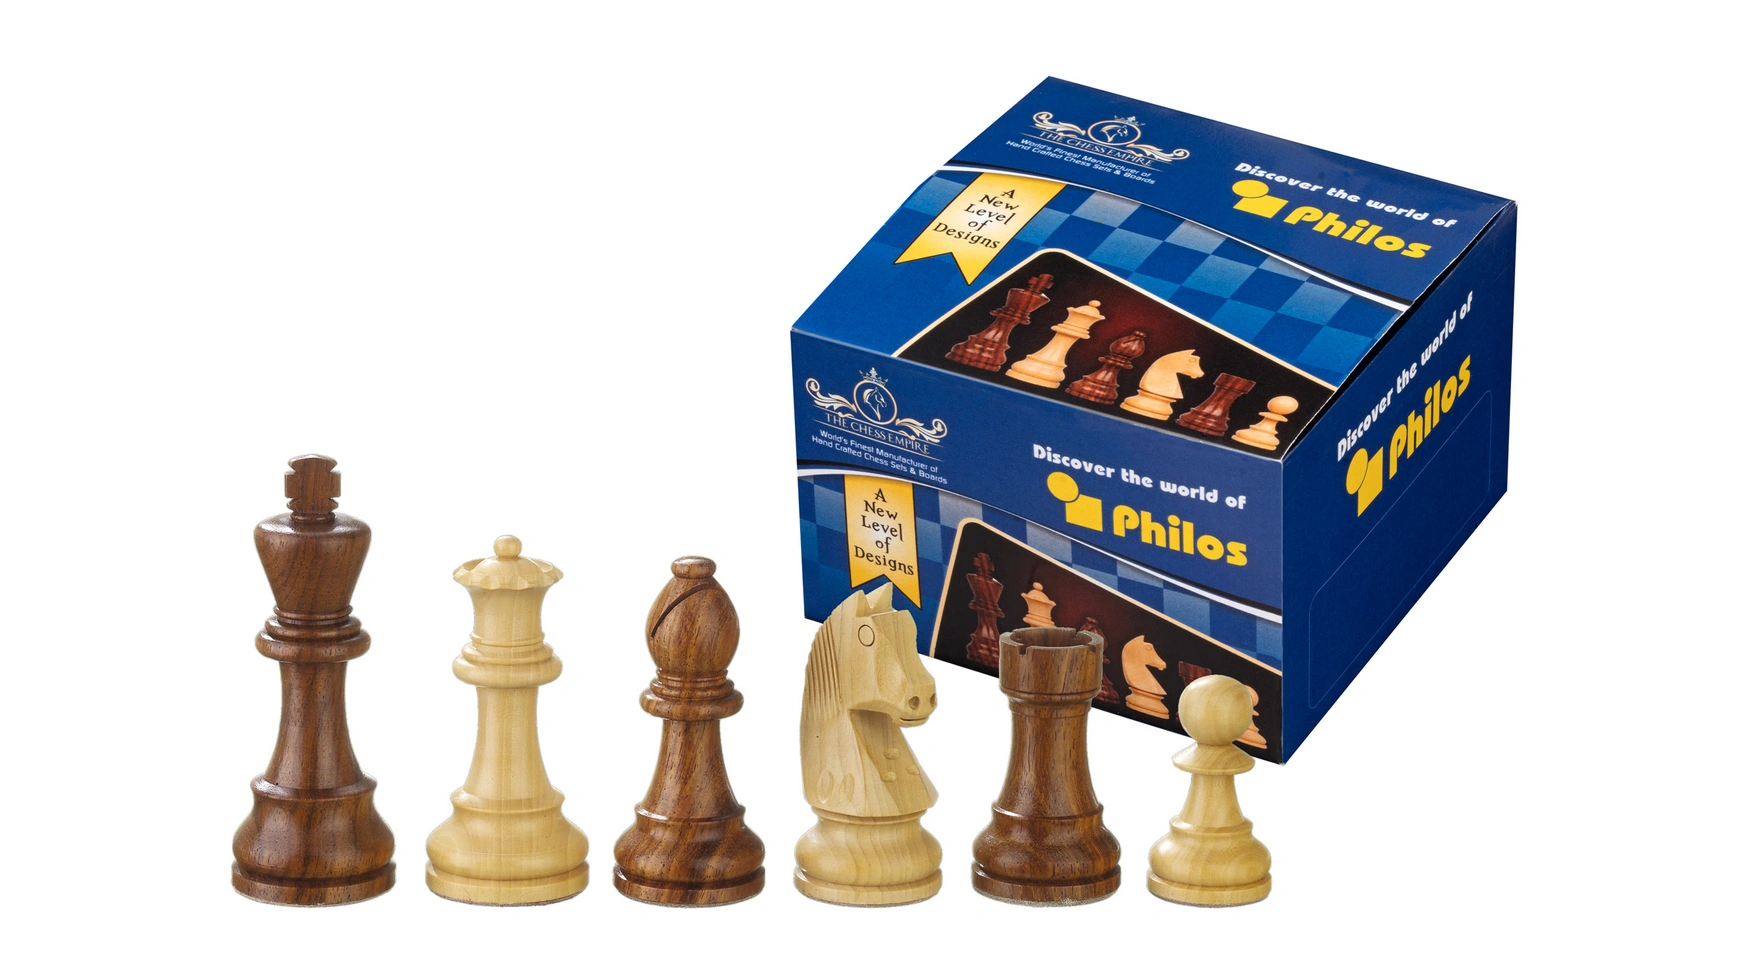 Philos-games artus, kh 83 мм, шахматные фигуры в монтажной коробке